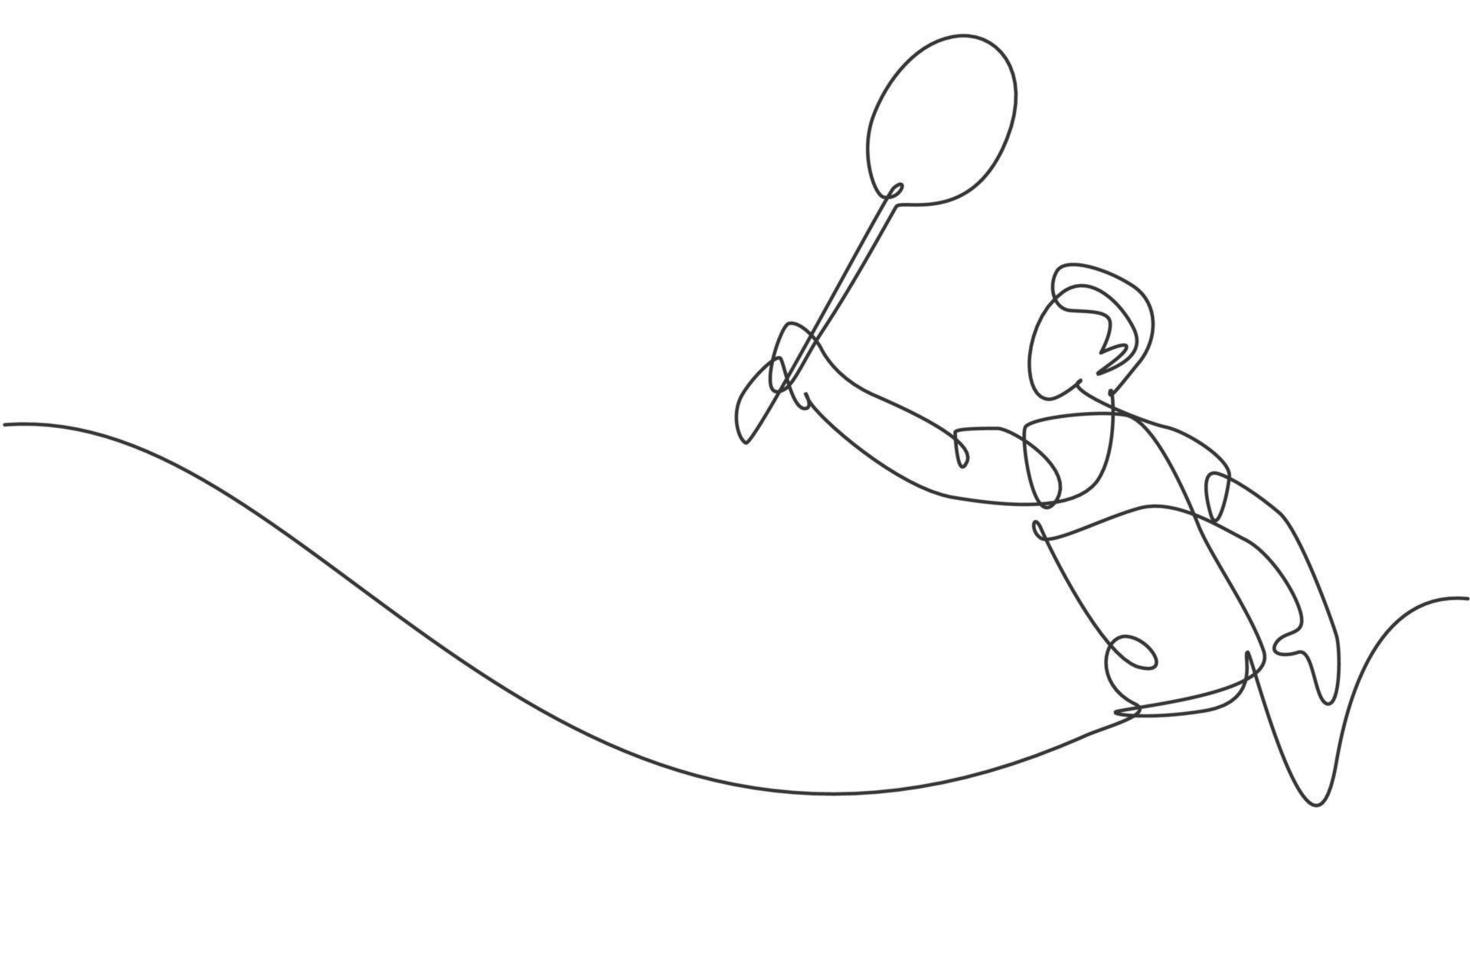 dibujo de una sola línea continua de un joven y ágil jugador de bádminton que golpea el volante. concepto de deporte competitivo. ilustración de vector de diseño de dibujo de una línea de moda para medios de publicación de torneos de bádminton